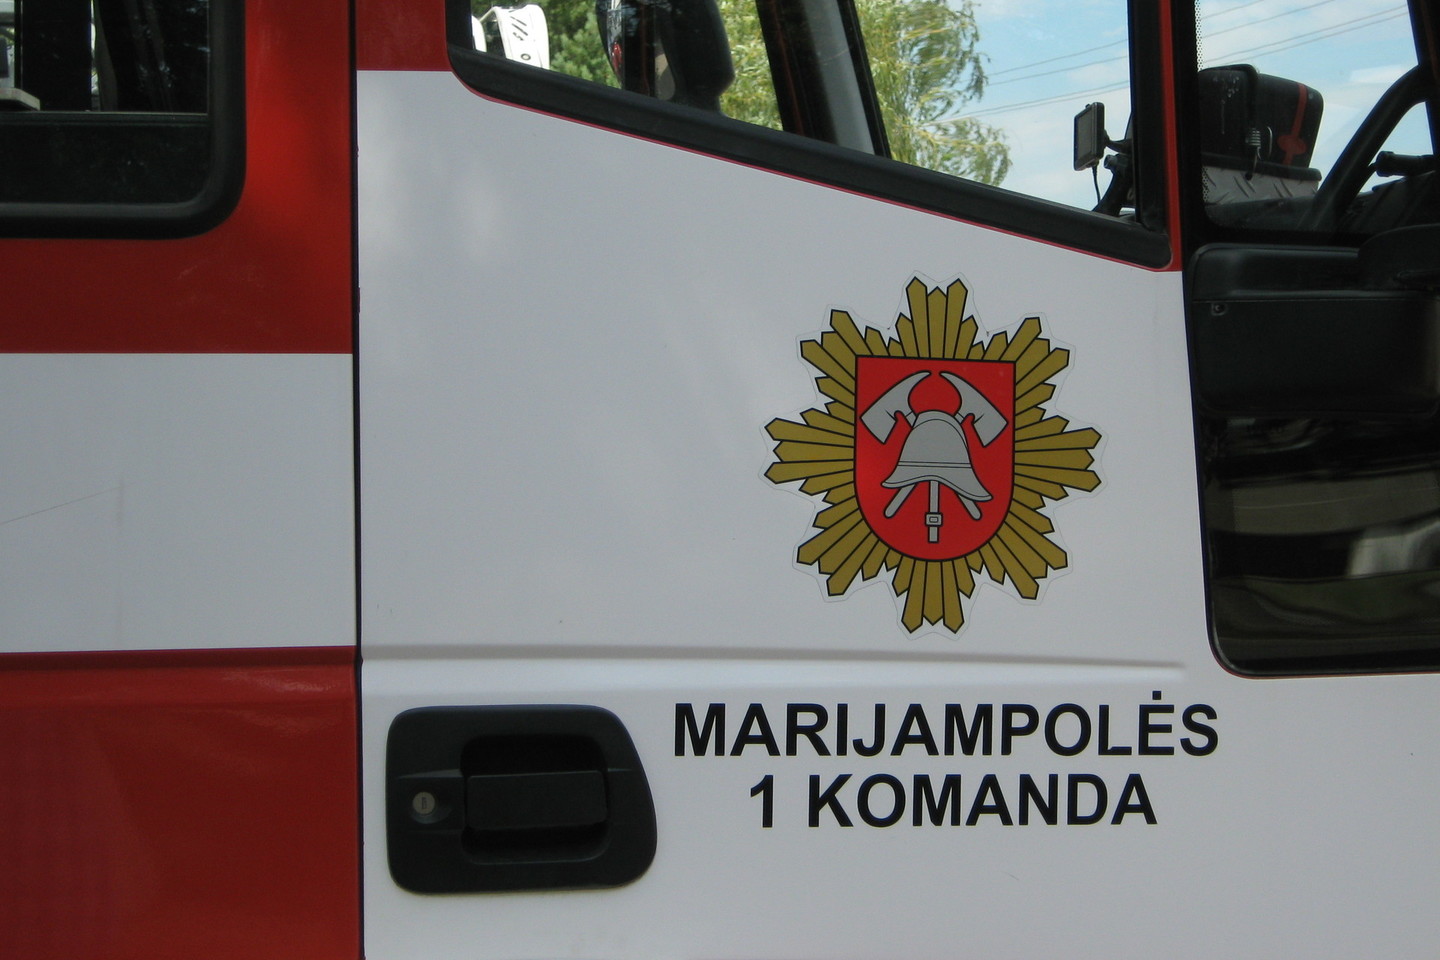 Marijampolės ugniagesiai nuslopino gaisrą automobilių remonto dirbtuvėse ir apsaugojo gretimus pastatus.<br>L.Juodzevičienės asociatyvi nuotr.